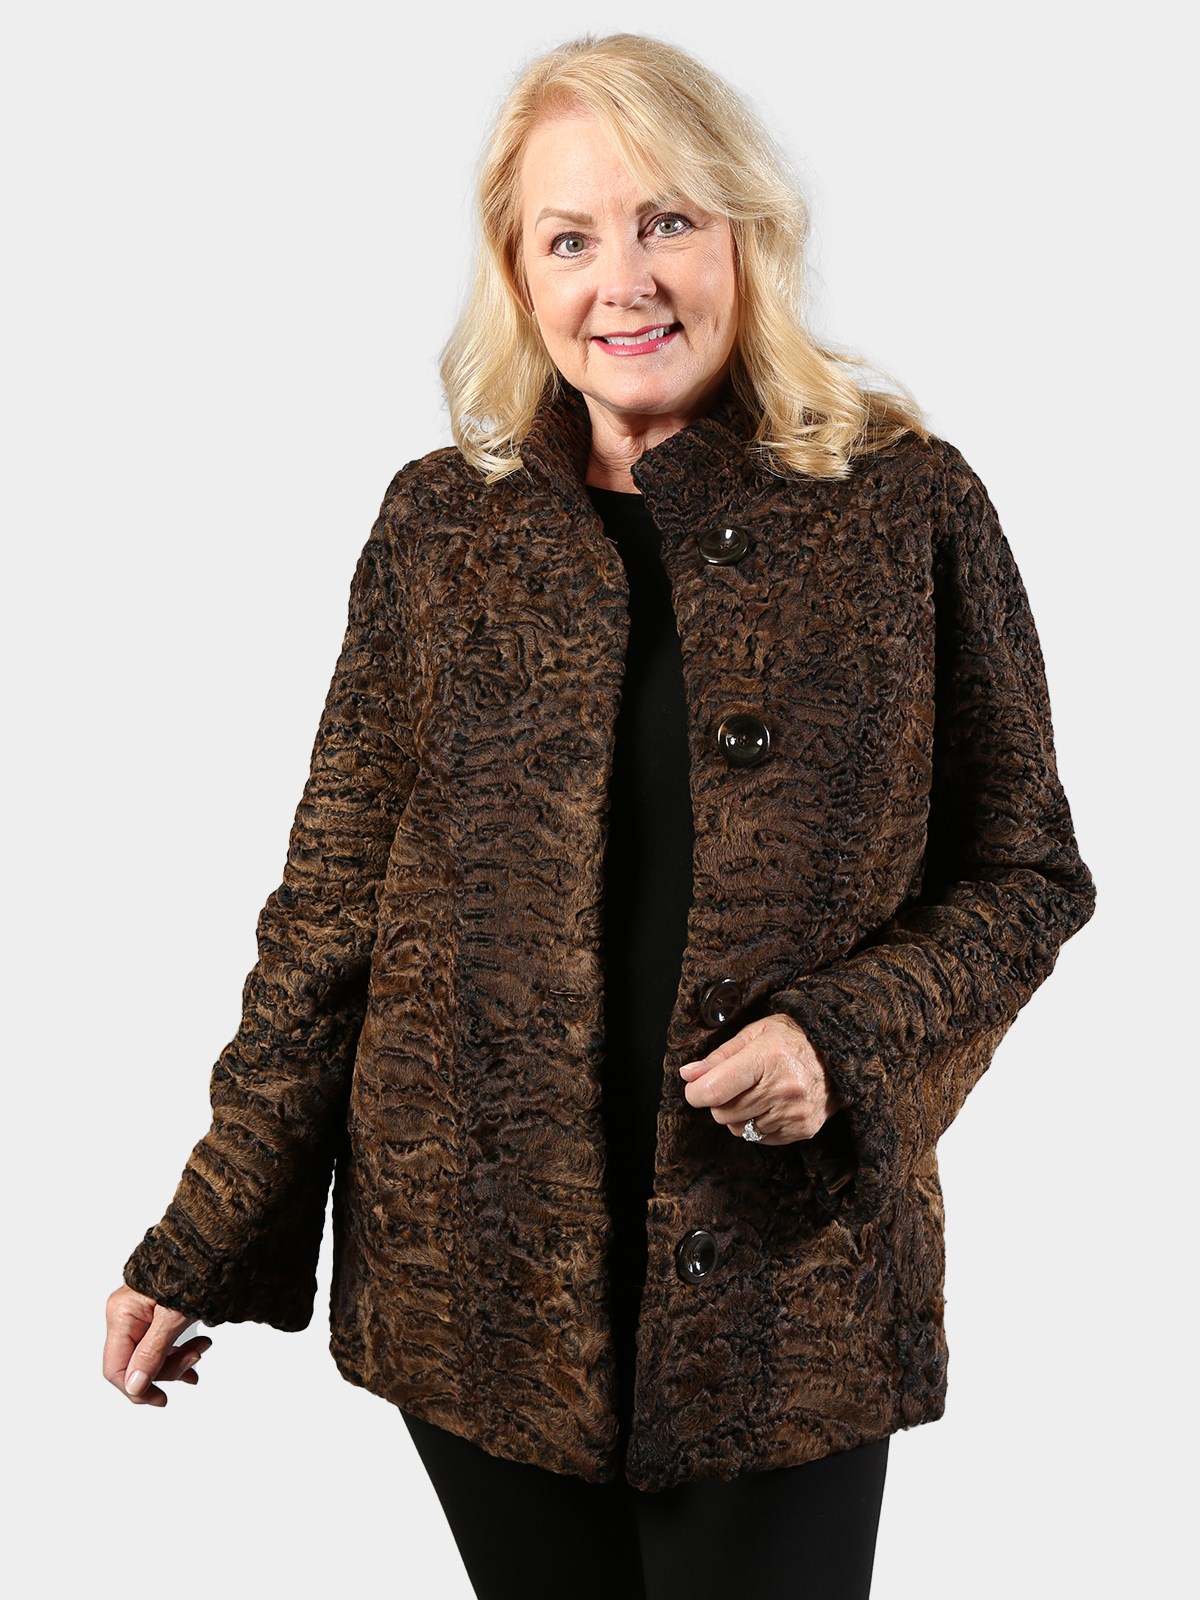 Woman's Brown and Black Swakara Lamb Fur Jacket (Reversible)